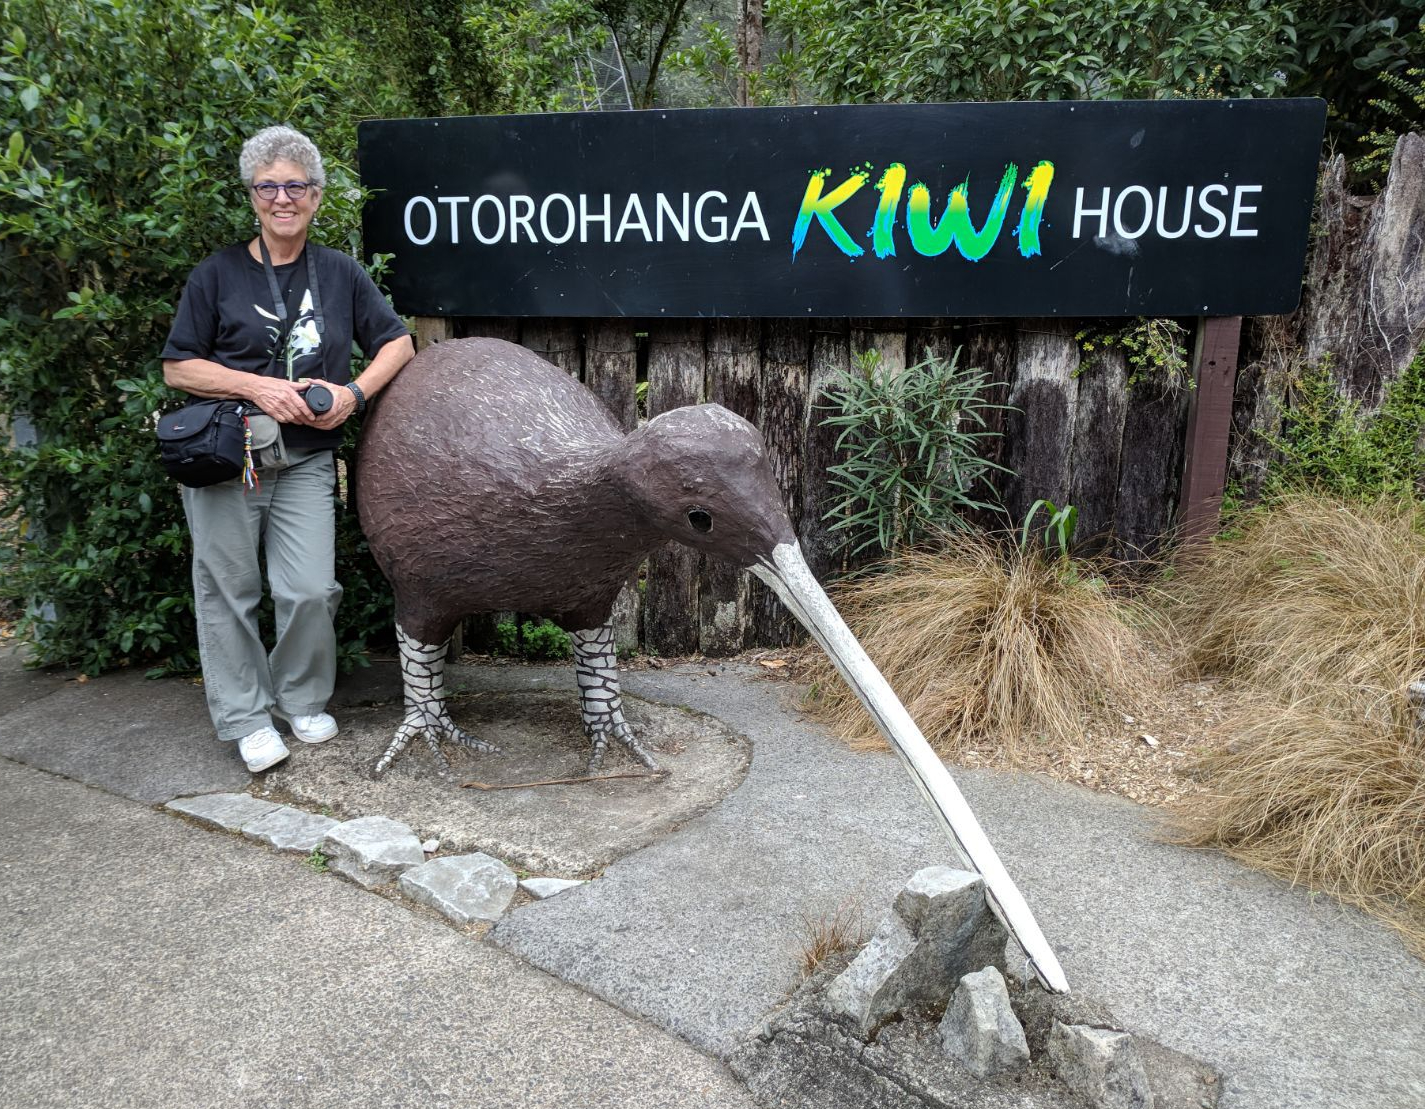 73--then via shuttle to Otorohanga &amp; Kiwi Zoo